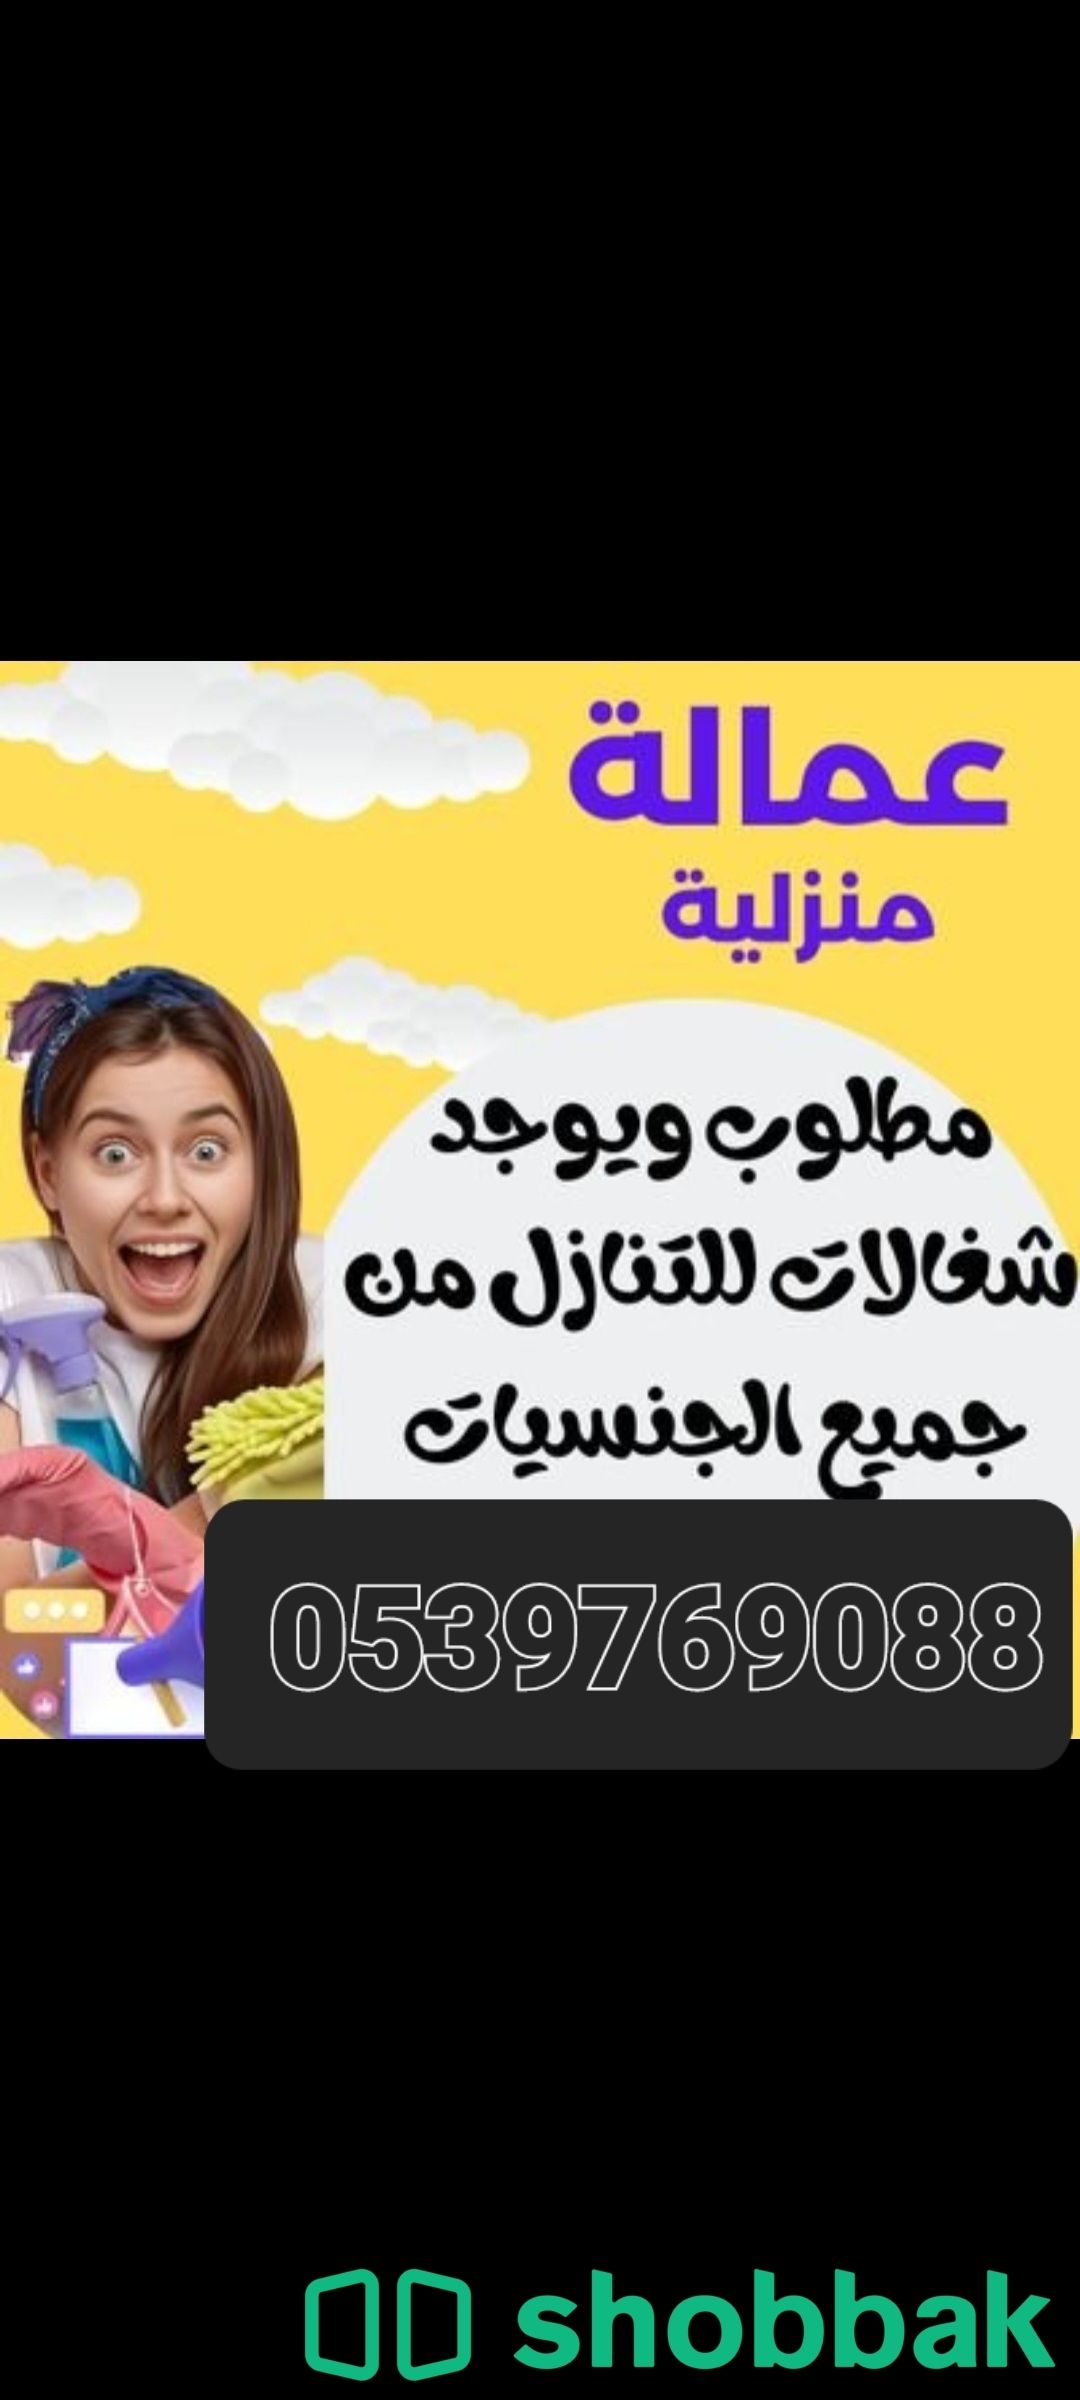 يوجد ومطلوب عاملات وطباخات للتنازل بافضل الاسعار 0539769088 Shobbak Saudi Arabia